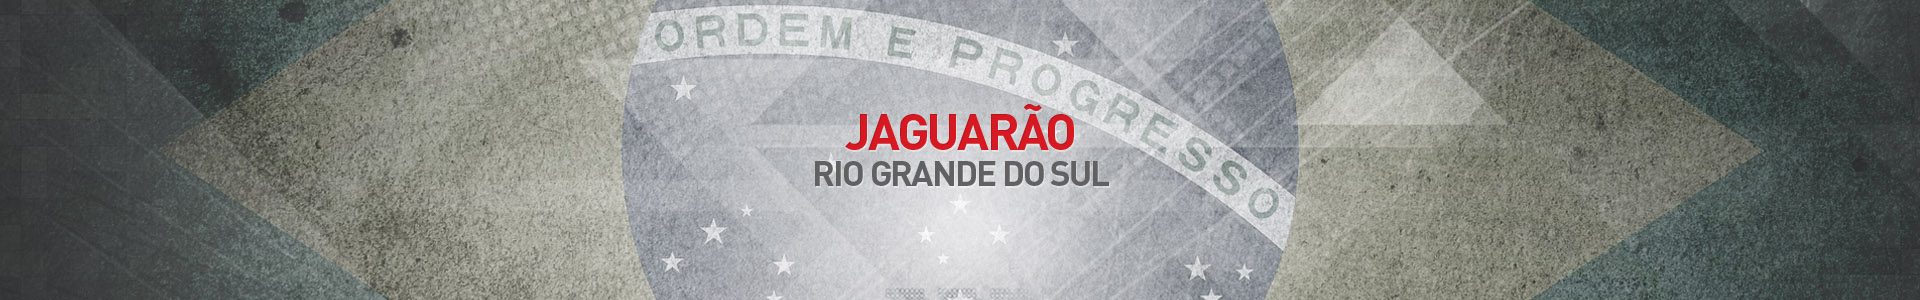 Topo-Cidades-Jaguarao-SBA